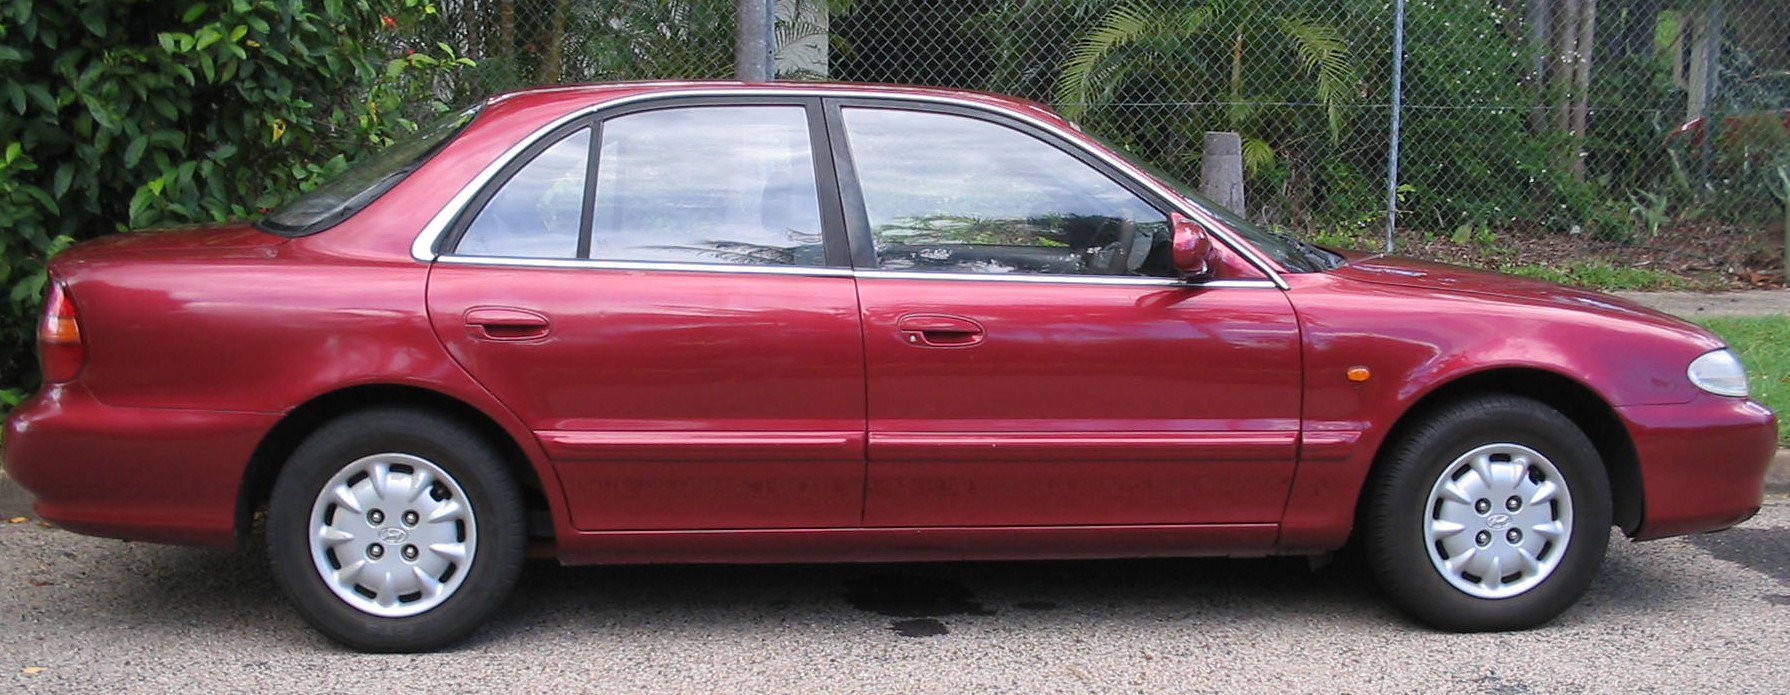 The Car. 1997 Hyundai Sonata.